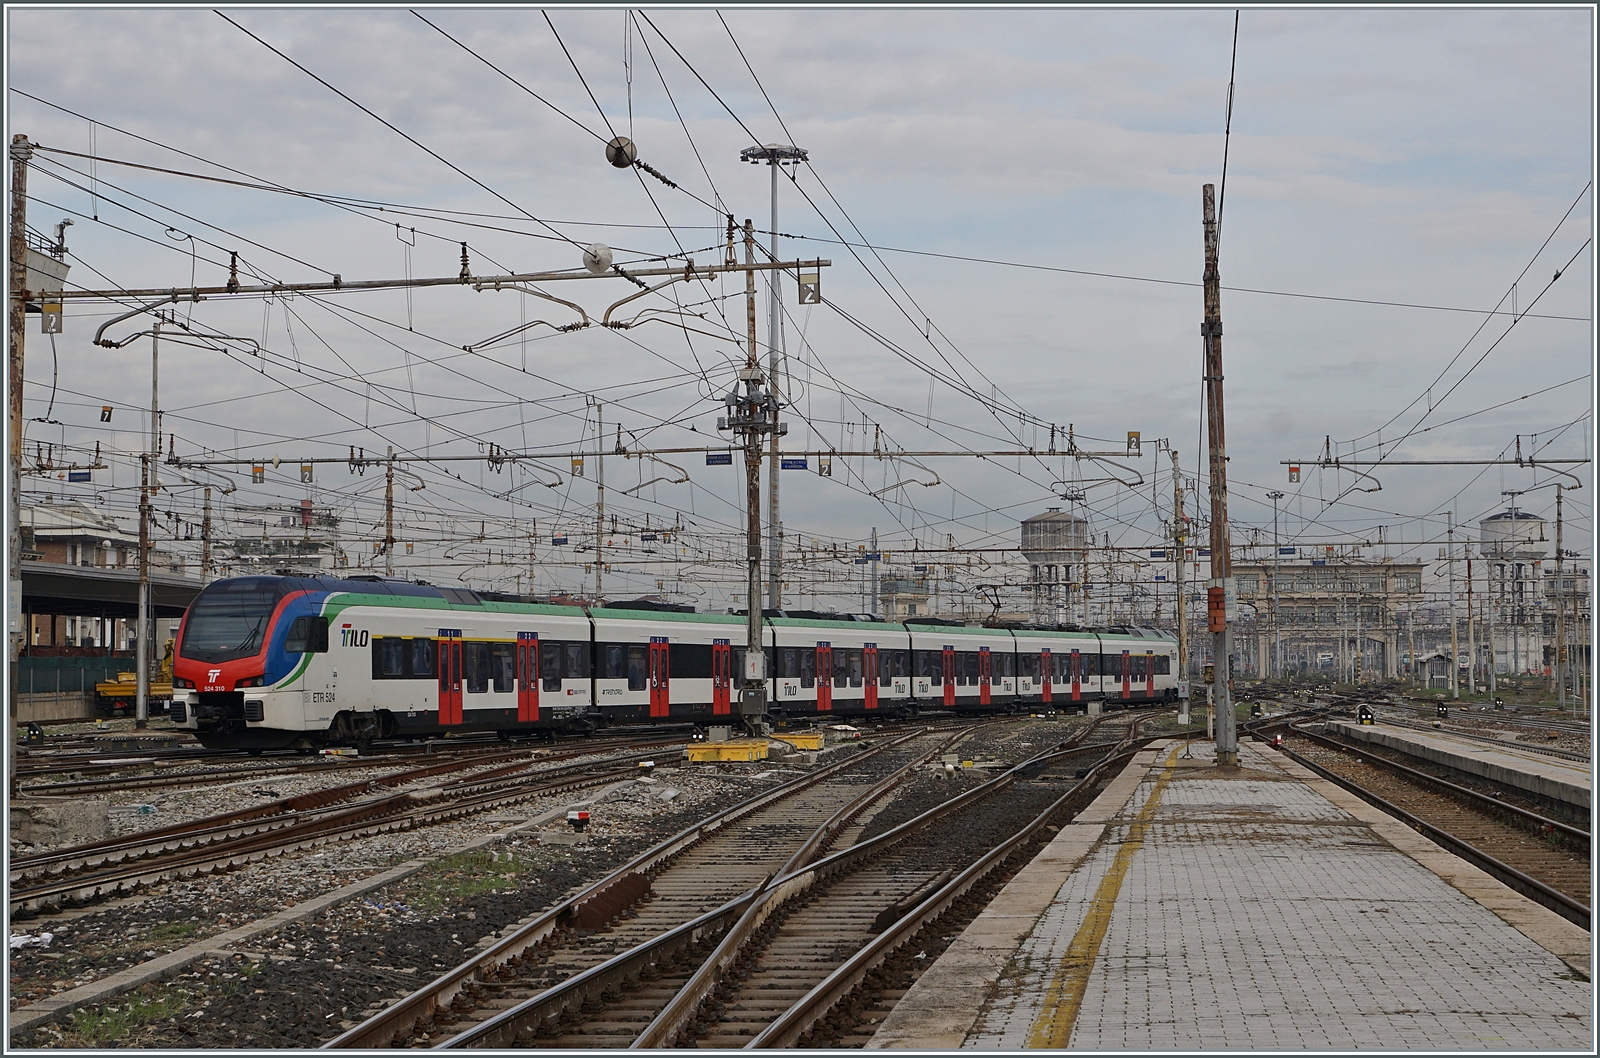 Auch - oder besonders im Nahverkehr - sind SBB Züge in (Nord-) Italien regelmäßig zu sehen, wobei der Name TILO (Ticino Lombardia) dies unterstreicht. In Milano verkehren nun im Stundentakt die RE80 TILO Züge von und nach Locarno. Im Bild der SBB TILO RABe 524 310 der Milano in Richtung Locarno verlässt.

8. November 2022